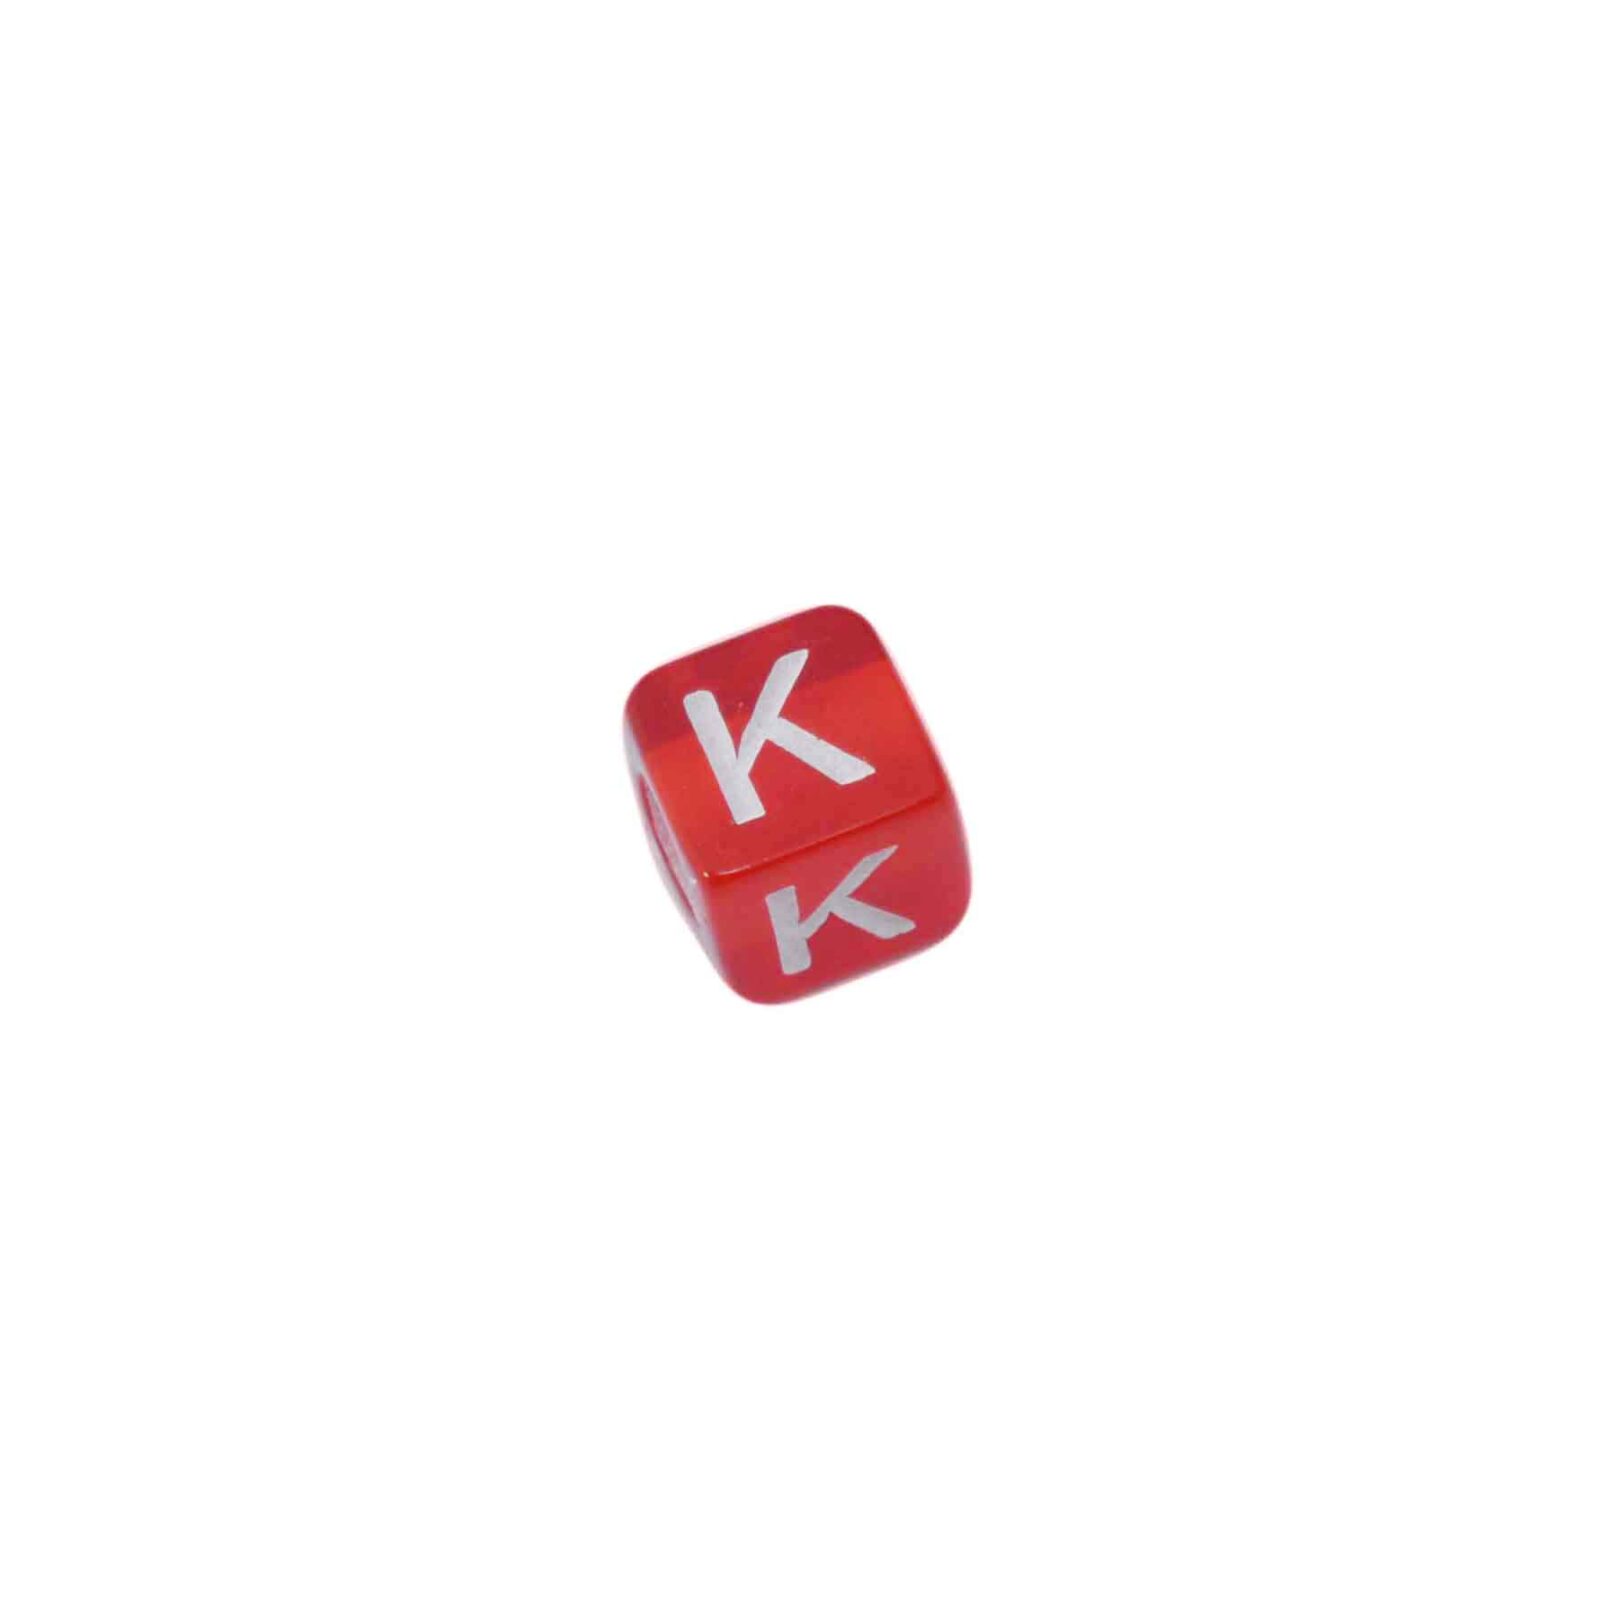 Rode letterkraal K